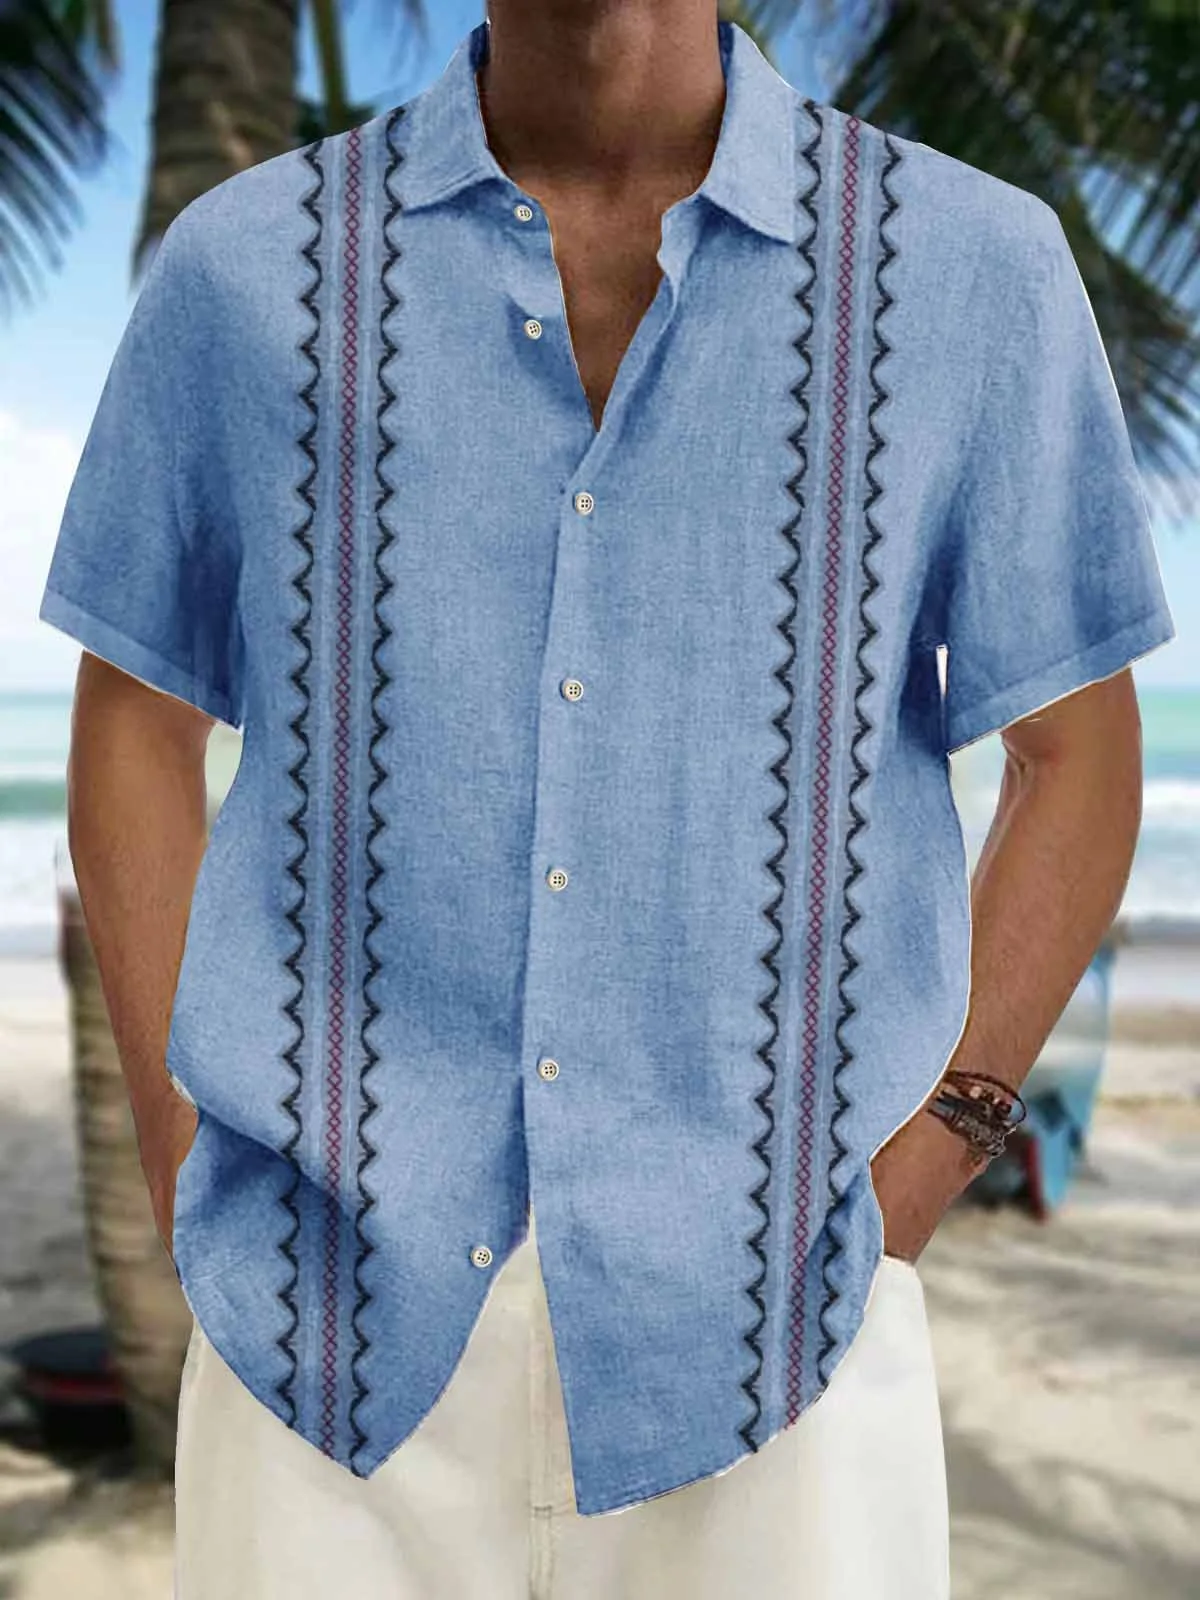 Royaura Holiday Casual Vintage Men's Guayabera Shirts Natural Fiber Blend Oversized Hawaiian Aztec Shirts